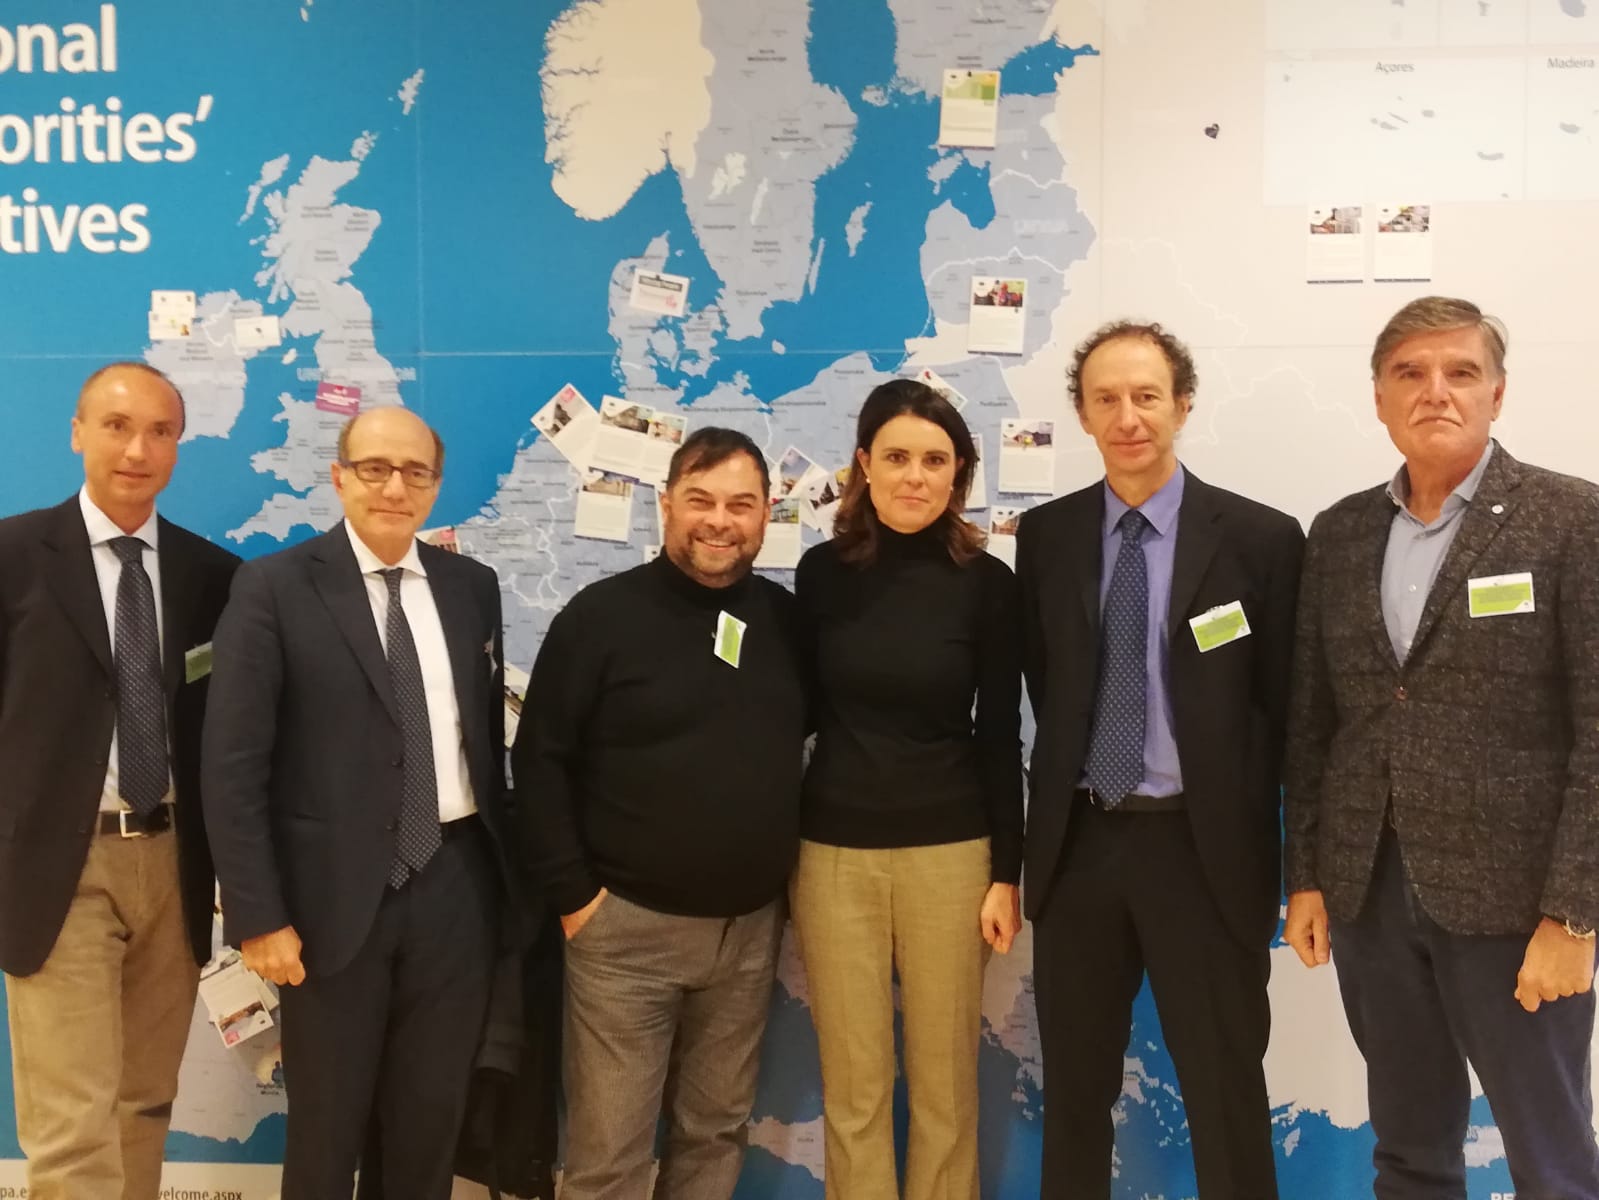 ASEV partecipa a un incontro con le istituzioni europee per dare un impulso al turismo nelle regioni frontaliere